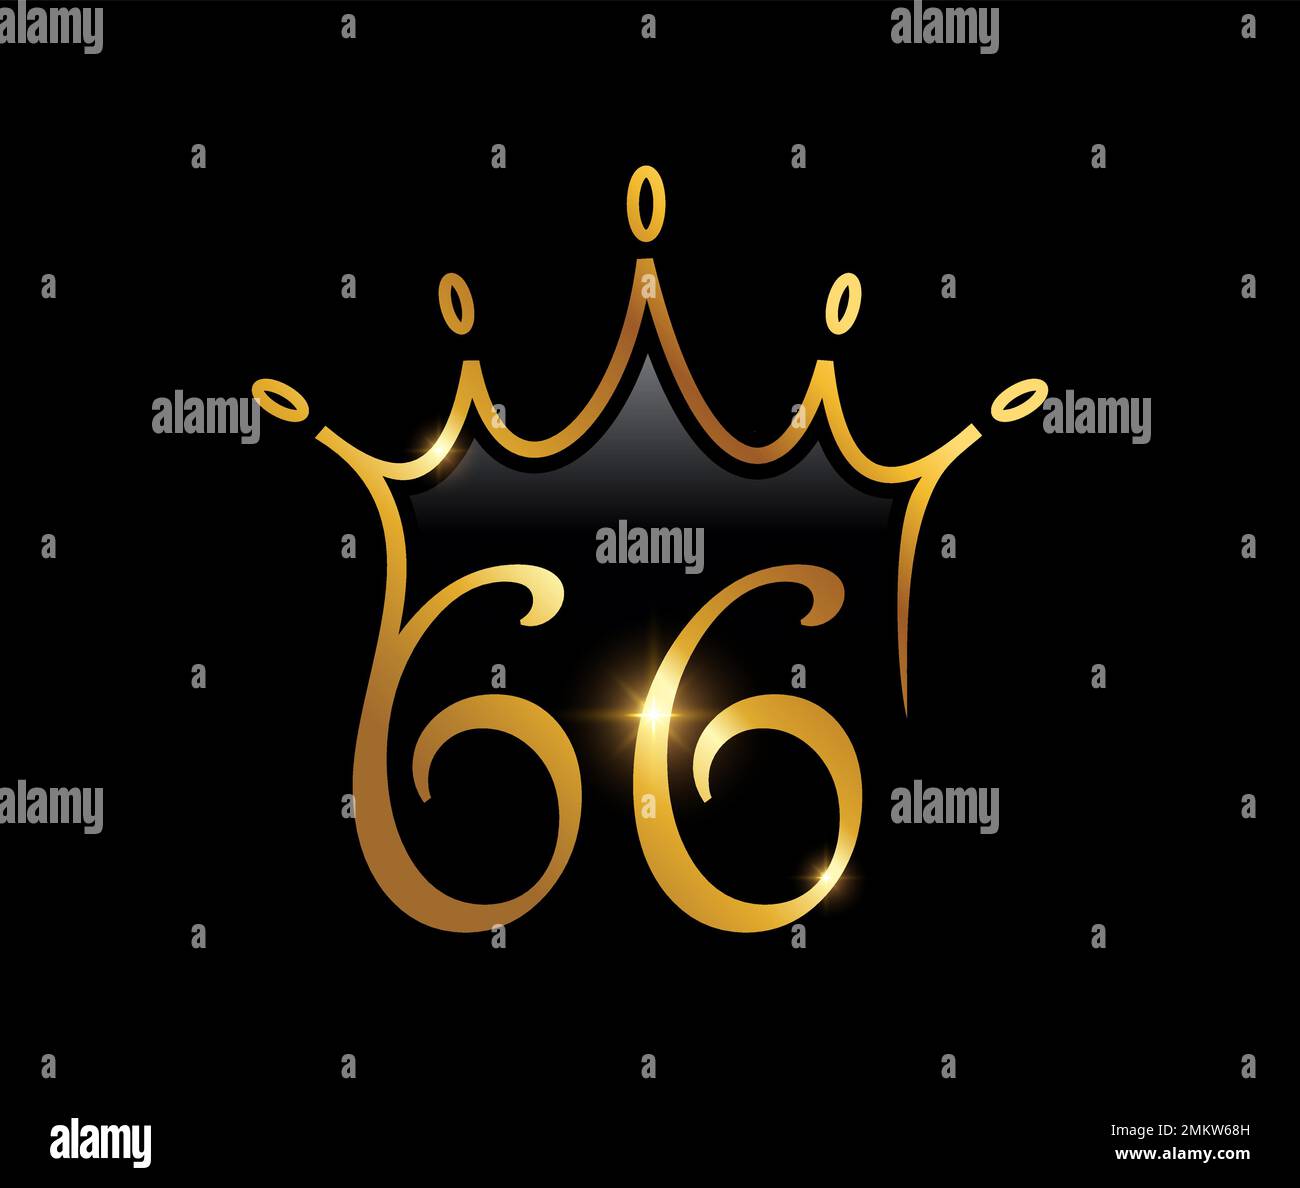 A vector illustration set of Golden Luxury Crown Monogram Number 66 ...